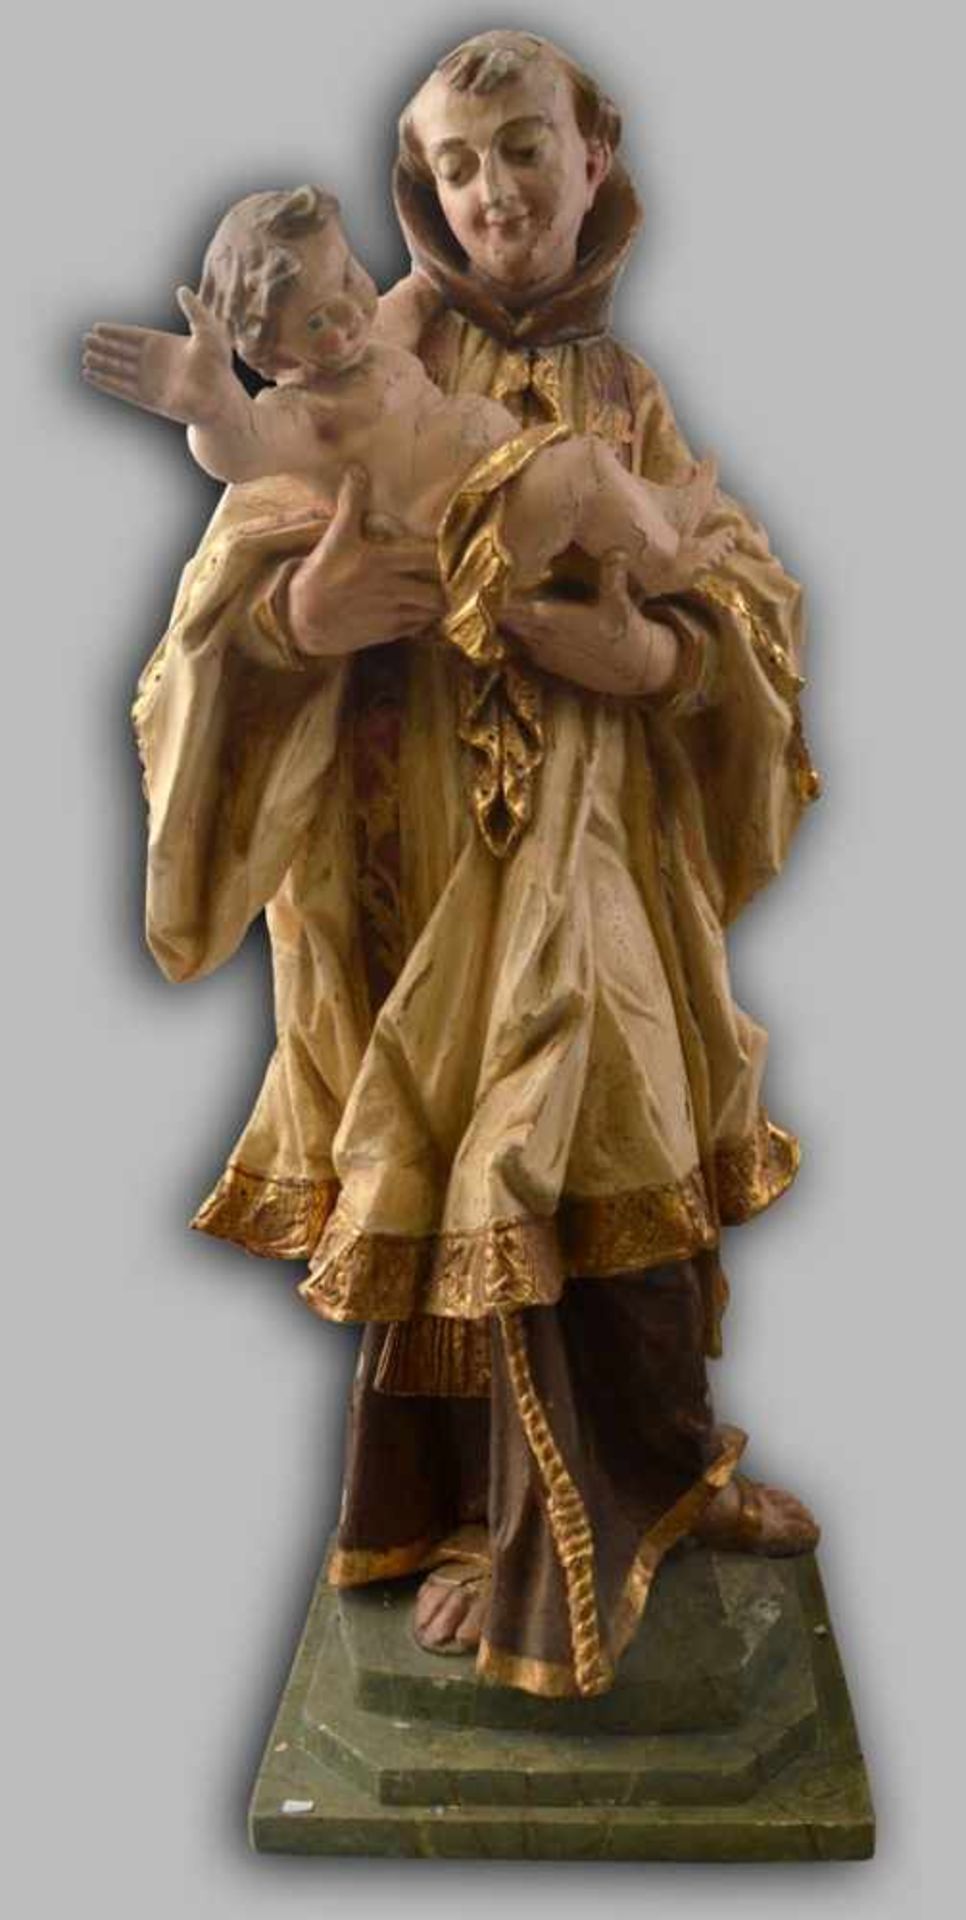 Heiliger Antonius mit Kind Hartholz, auf rechteckigem Sockel stehend, faltenreiches Gewand, beige/